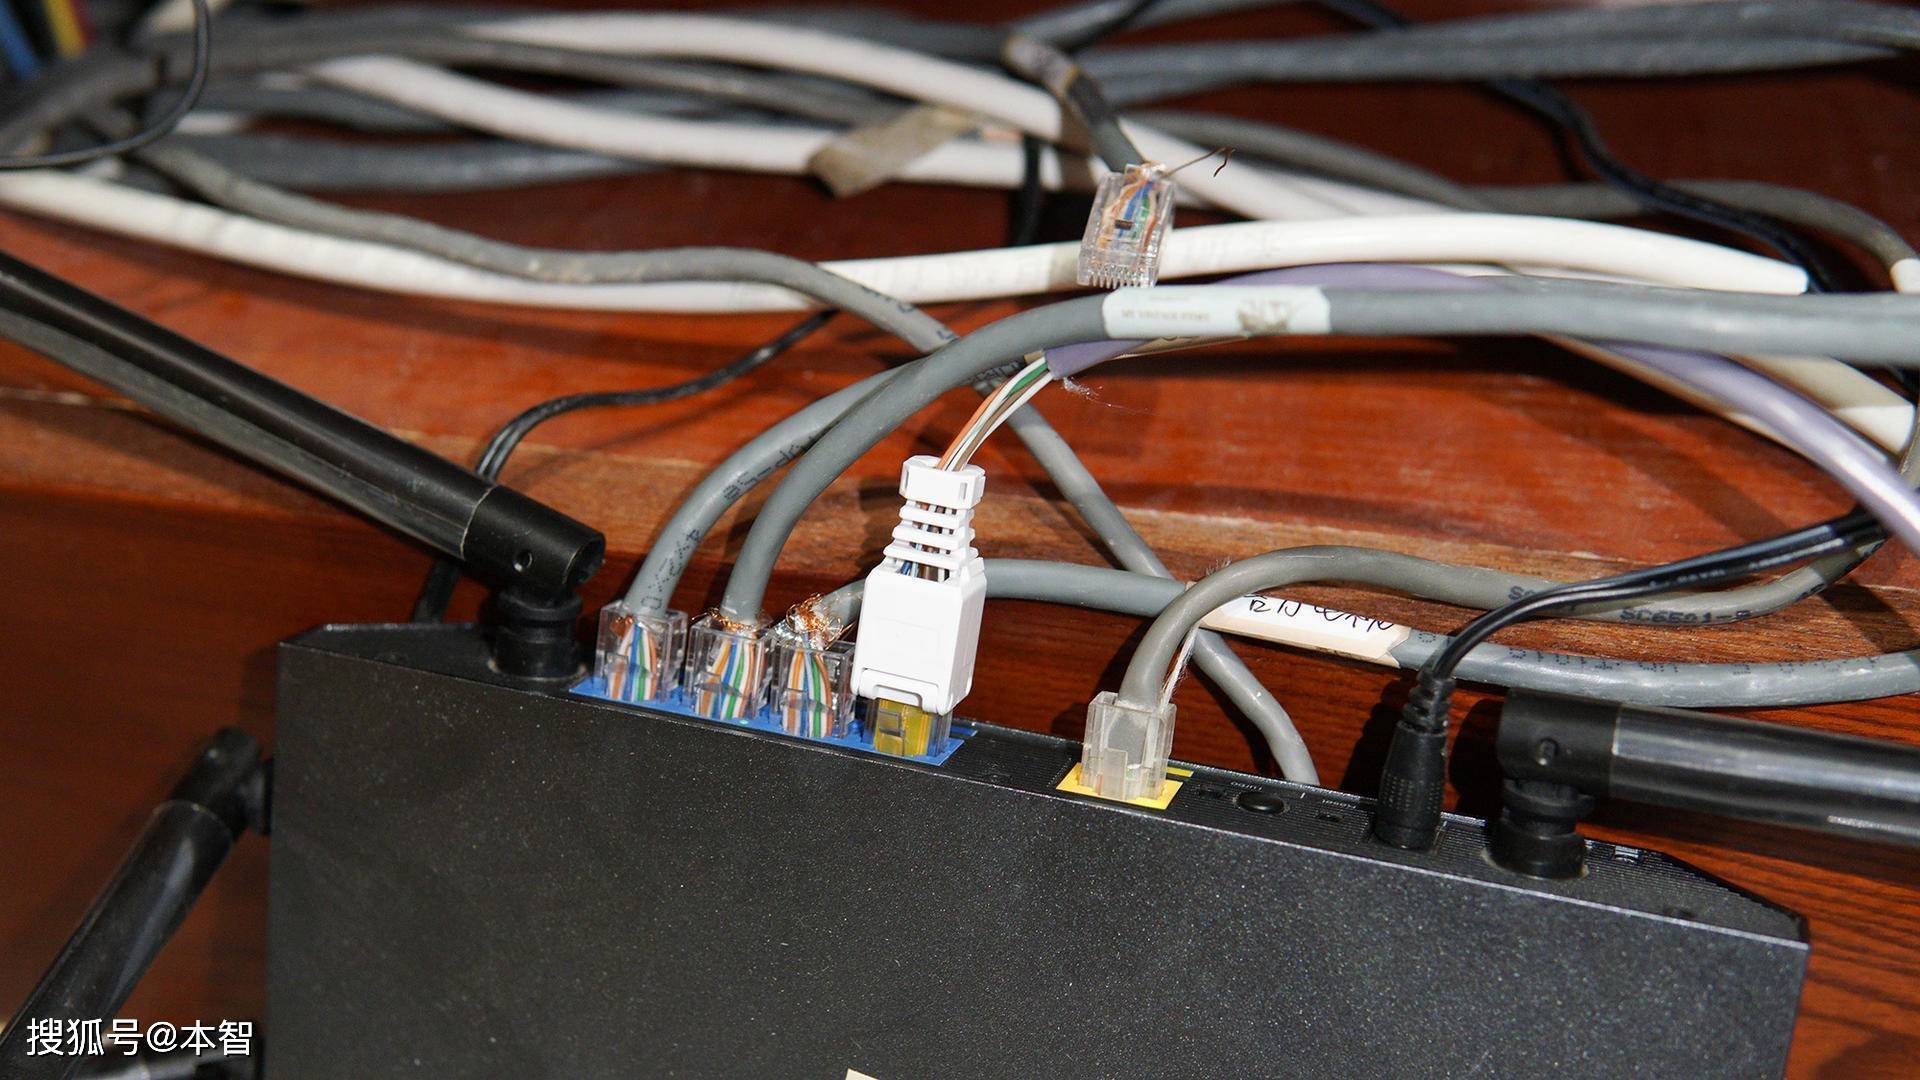 安装好水晶头的网线接好路由器和电脑即可,不需要其他的操作了.